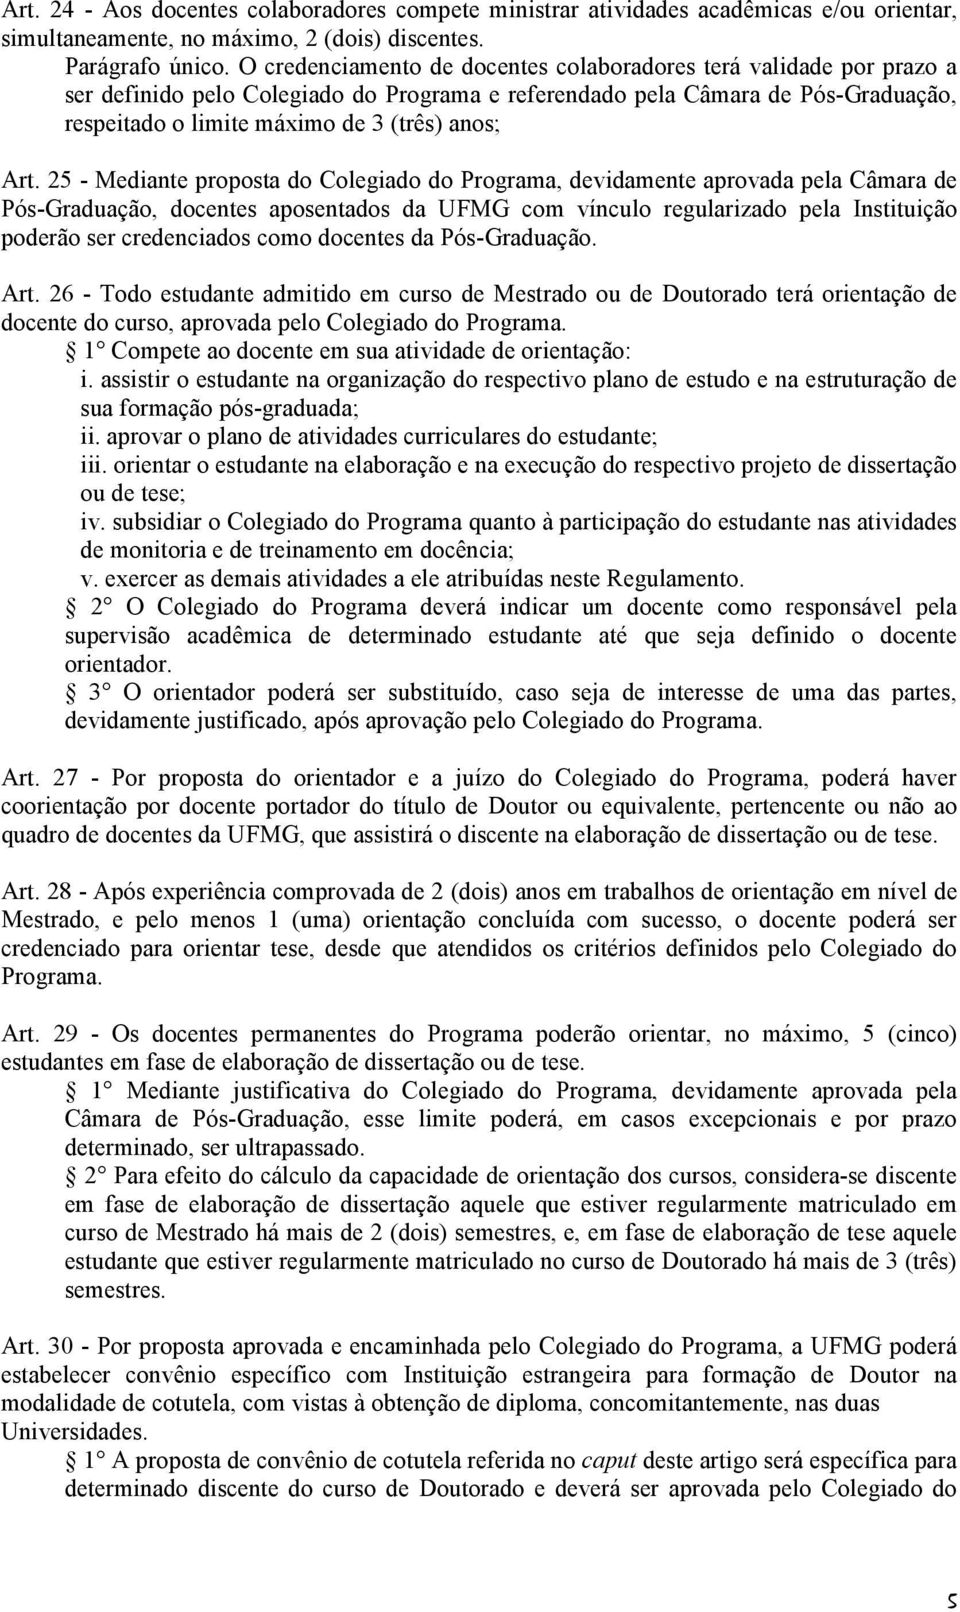 Art. 25 - Mediante proposta do Colegiado do Programa, devidamente aprovada pela Câmara de Pós-Graduação, docentes aposentados da UFMG com vínculo regularizado pela Instituição poderão ser